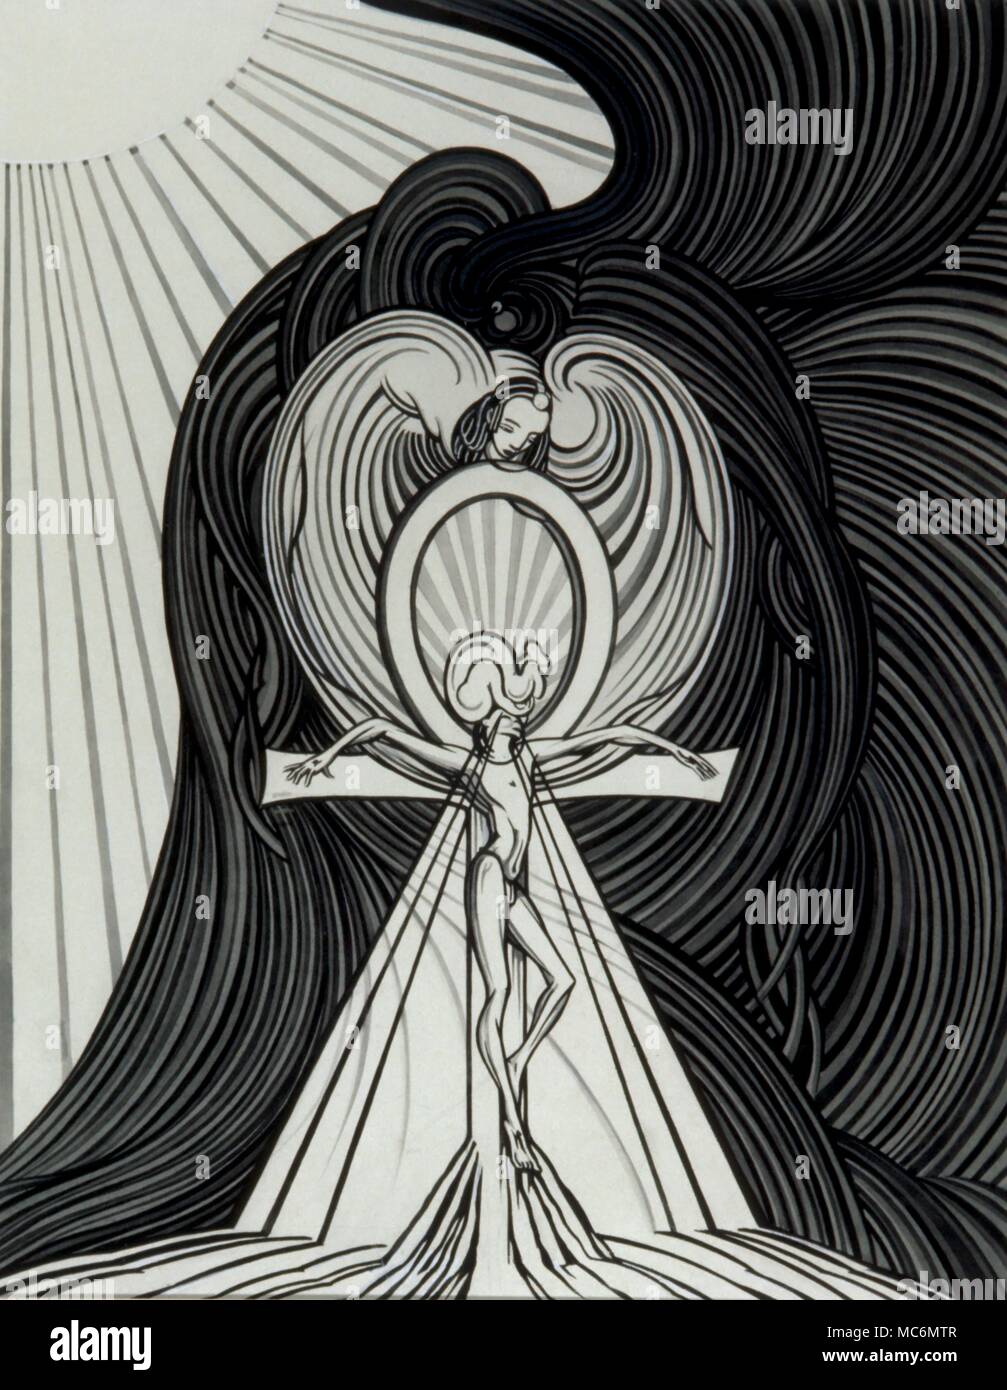 - Symboles de l'Art occulte - mythologie égyptienne Ankh - grande illustration monochrome, le manteau de Set, (vers 1950), représentant l'équivalent égyptien du Diable crucifié sur une croix ankh. Comme le suggère l'illustration, le royaume de l'ensemble est éclairé l'obscurité - la zone solaire est gouverné par son frère, Osiris. Banque D'Images